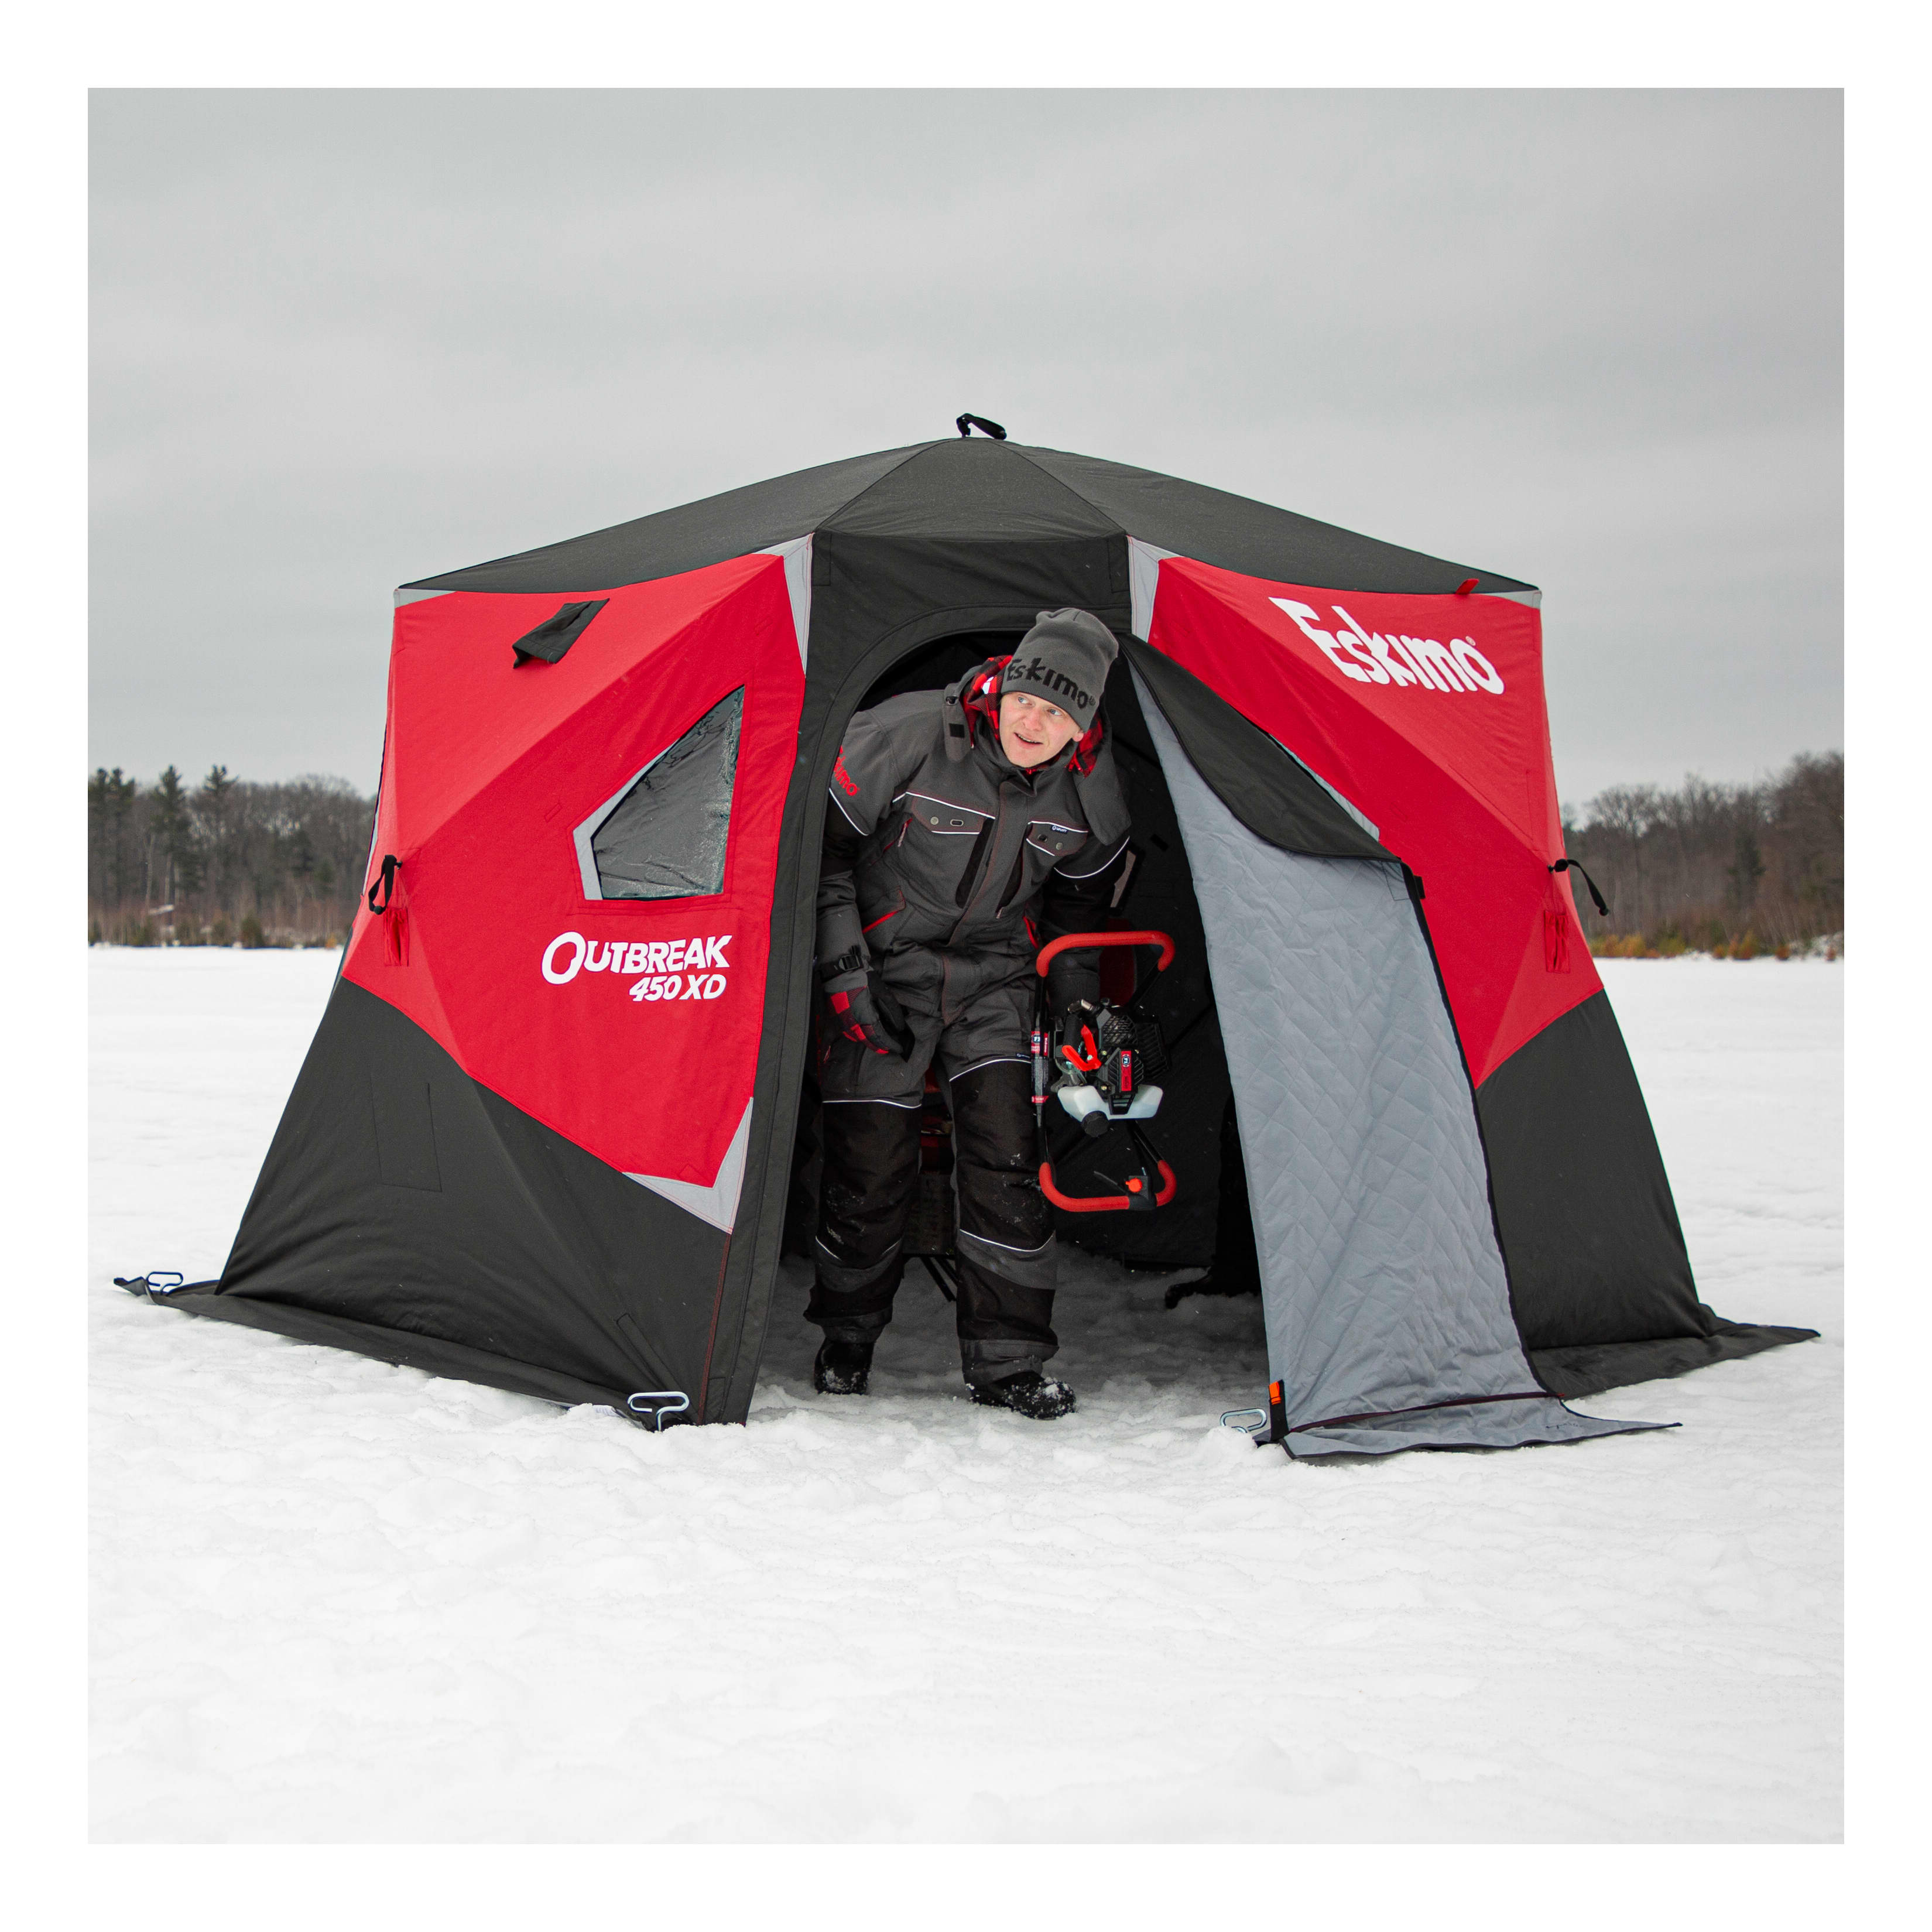 Eskimo® Outbreak 450XD Ice Shelter